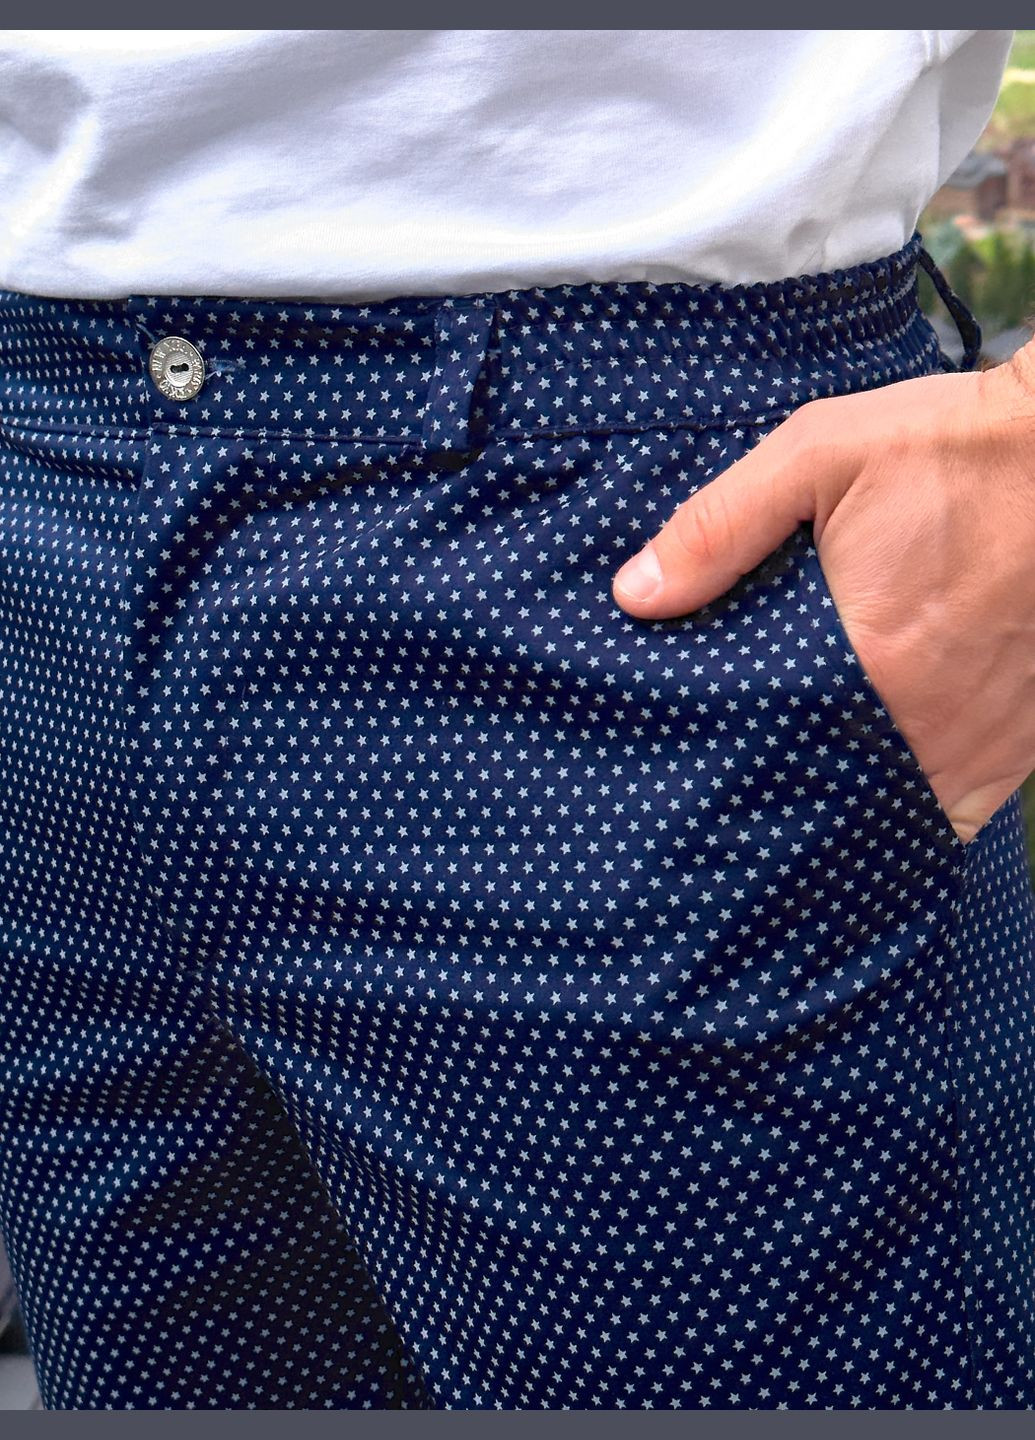 Мужские повседневные летние шорты классического стиля с карманами Tailer (293244720)